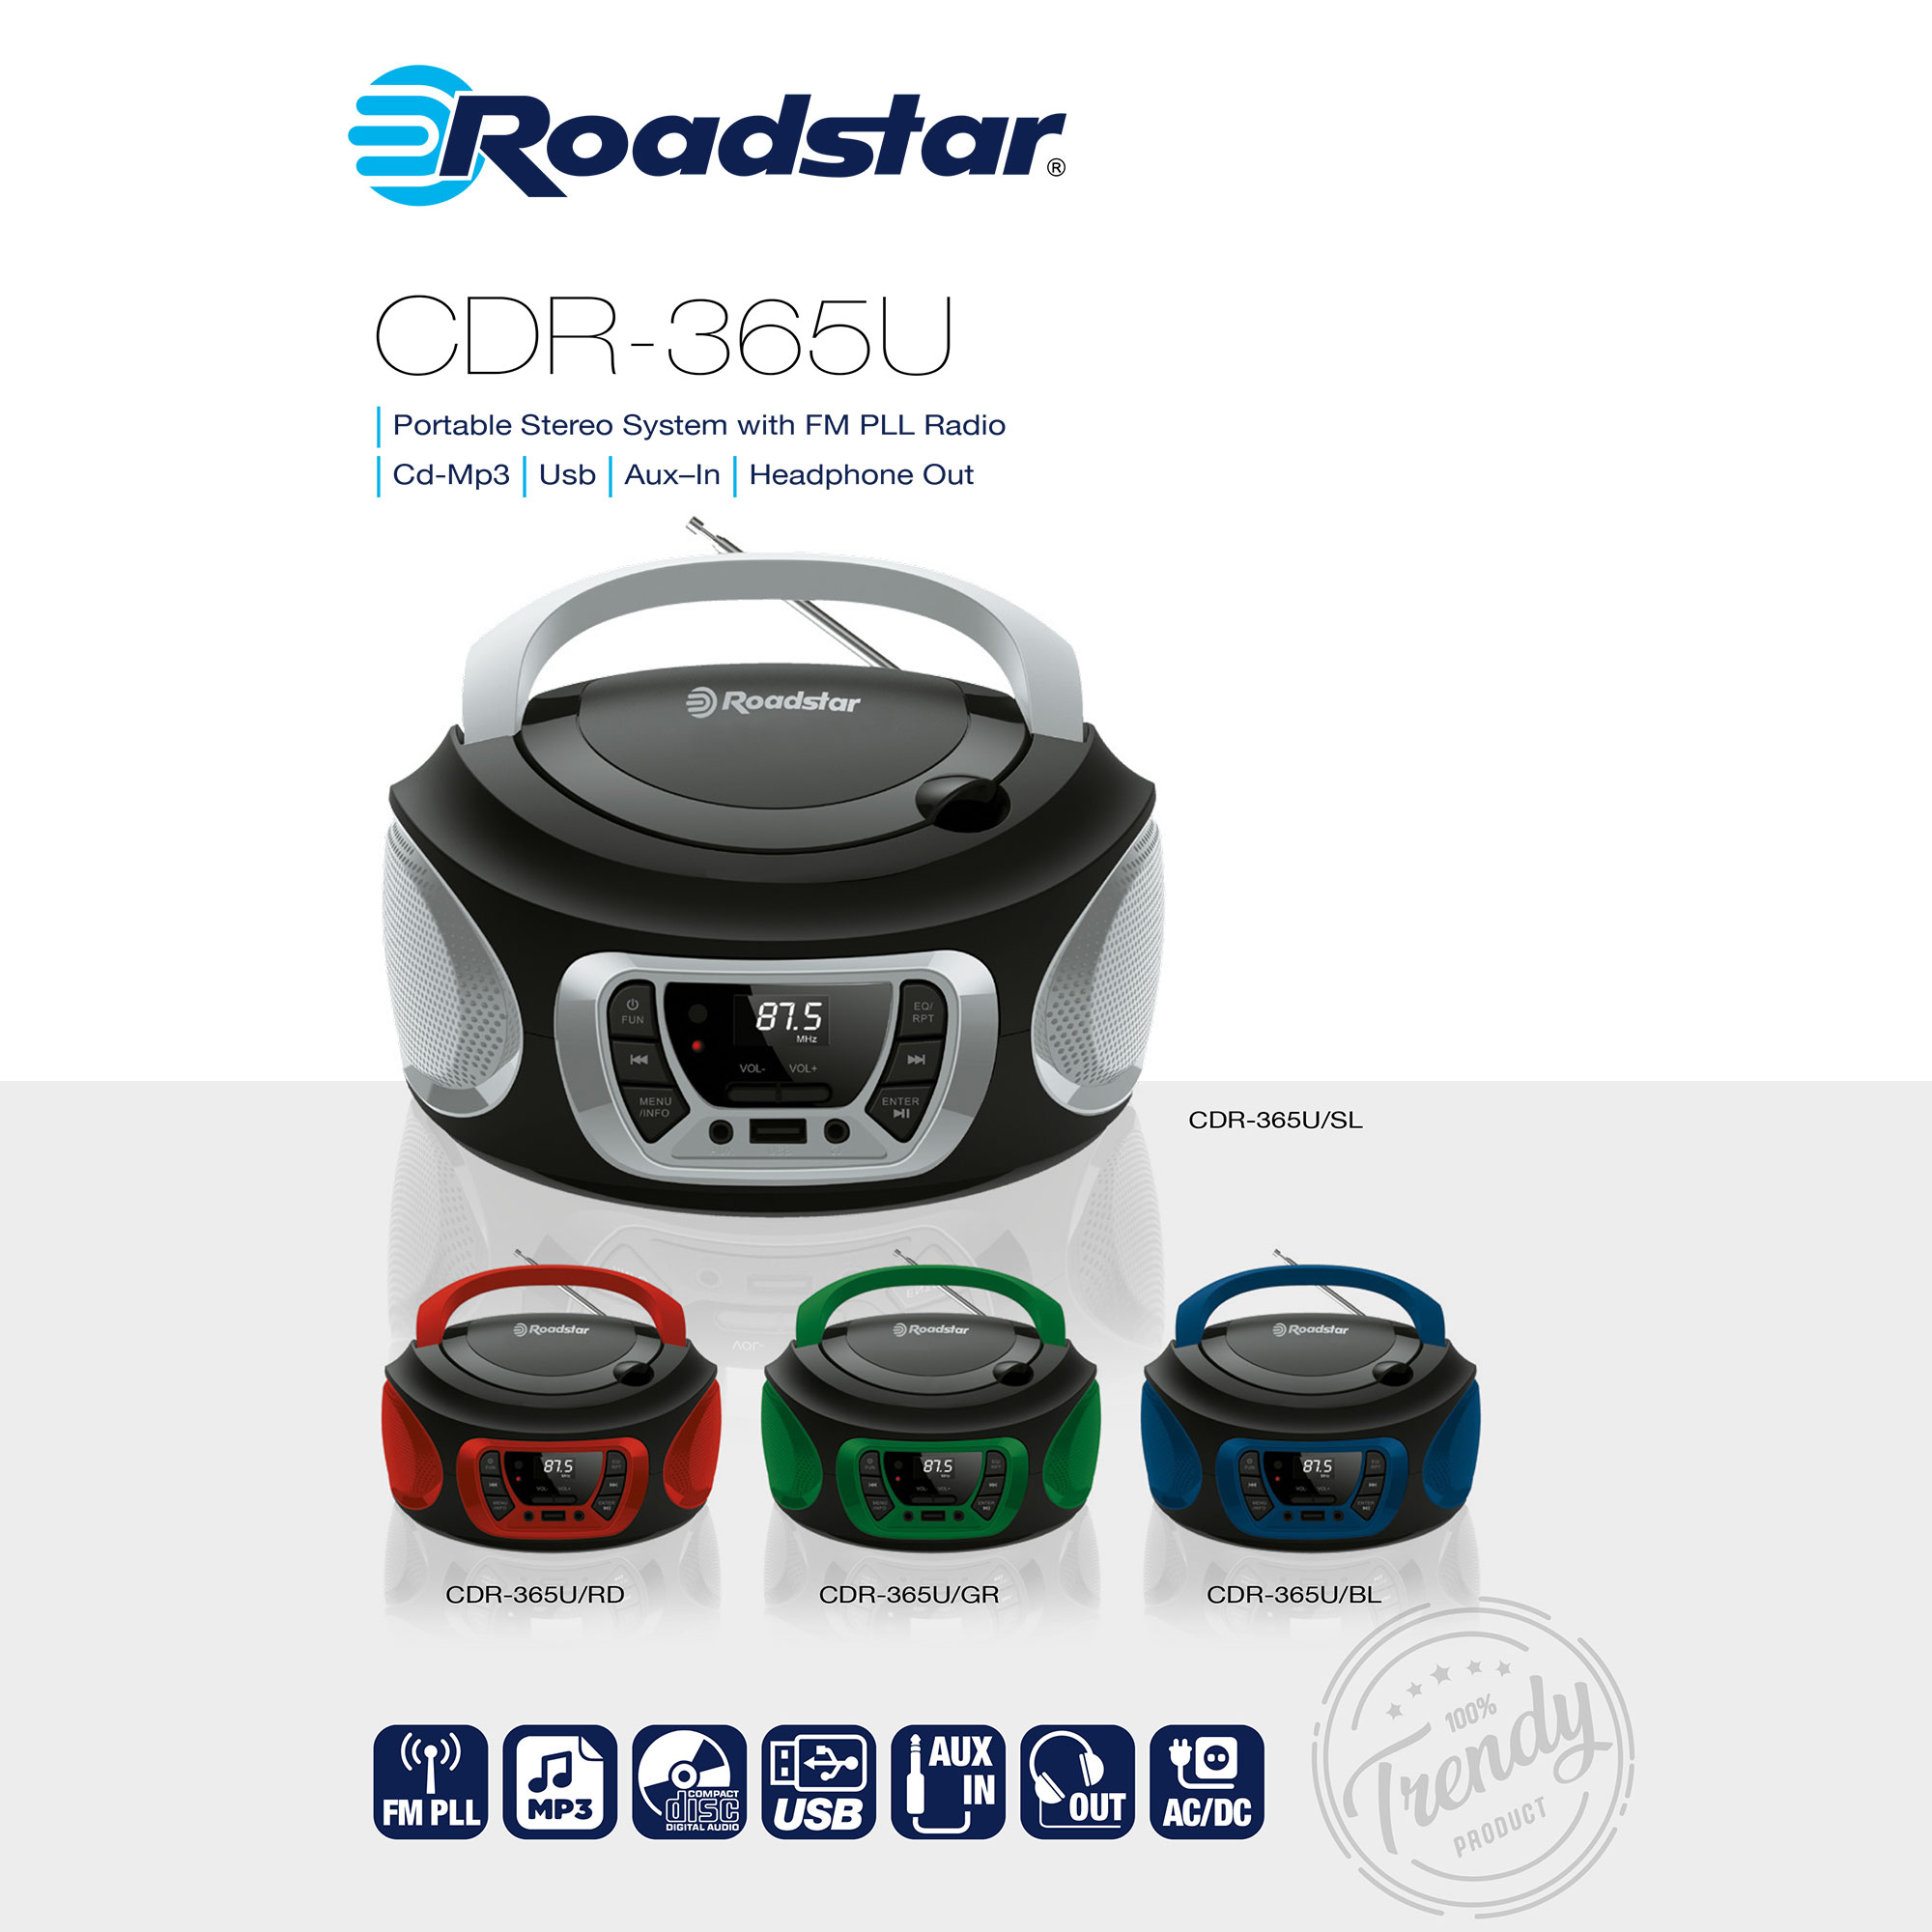 Schwarz/Blau CDR-365U/BL Radiorecorder, ROADSTAR